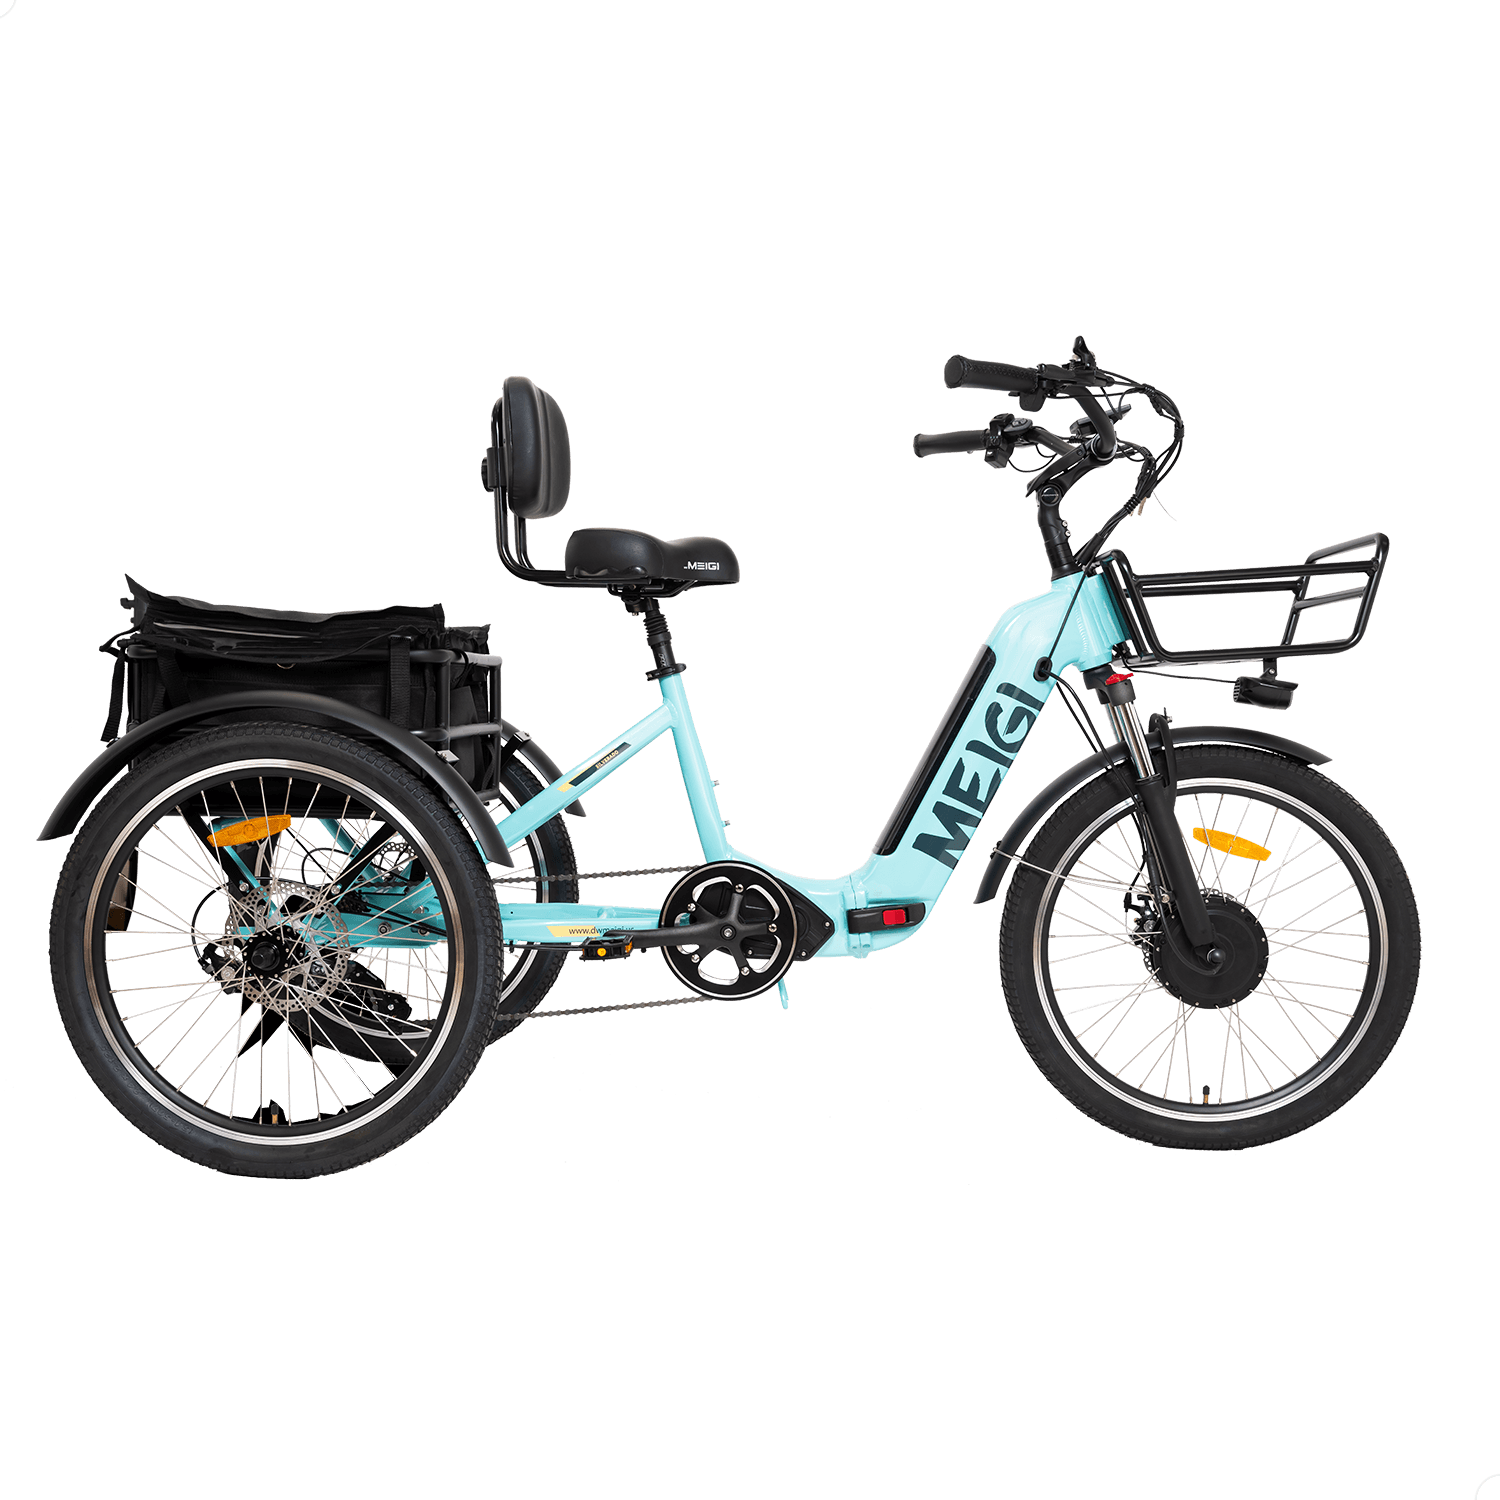 MG2302-SILVERADO Urban Electric Tricycle